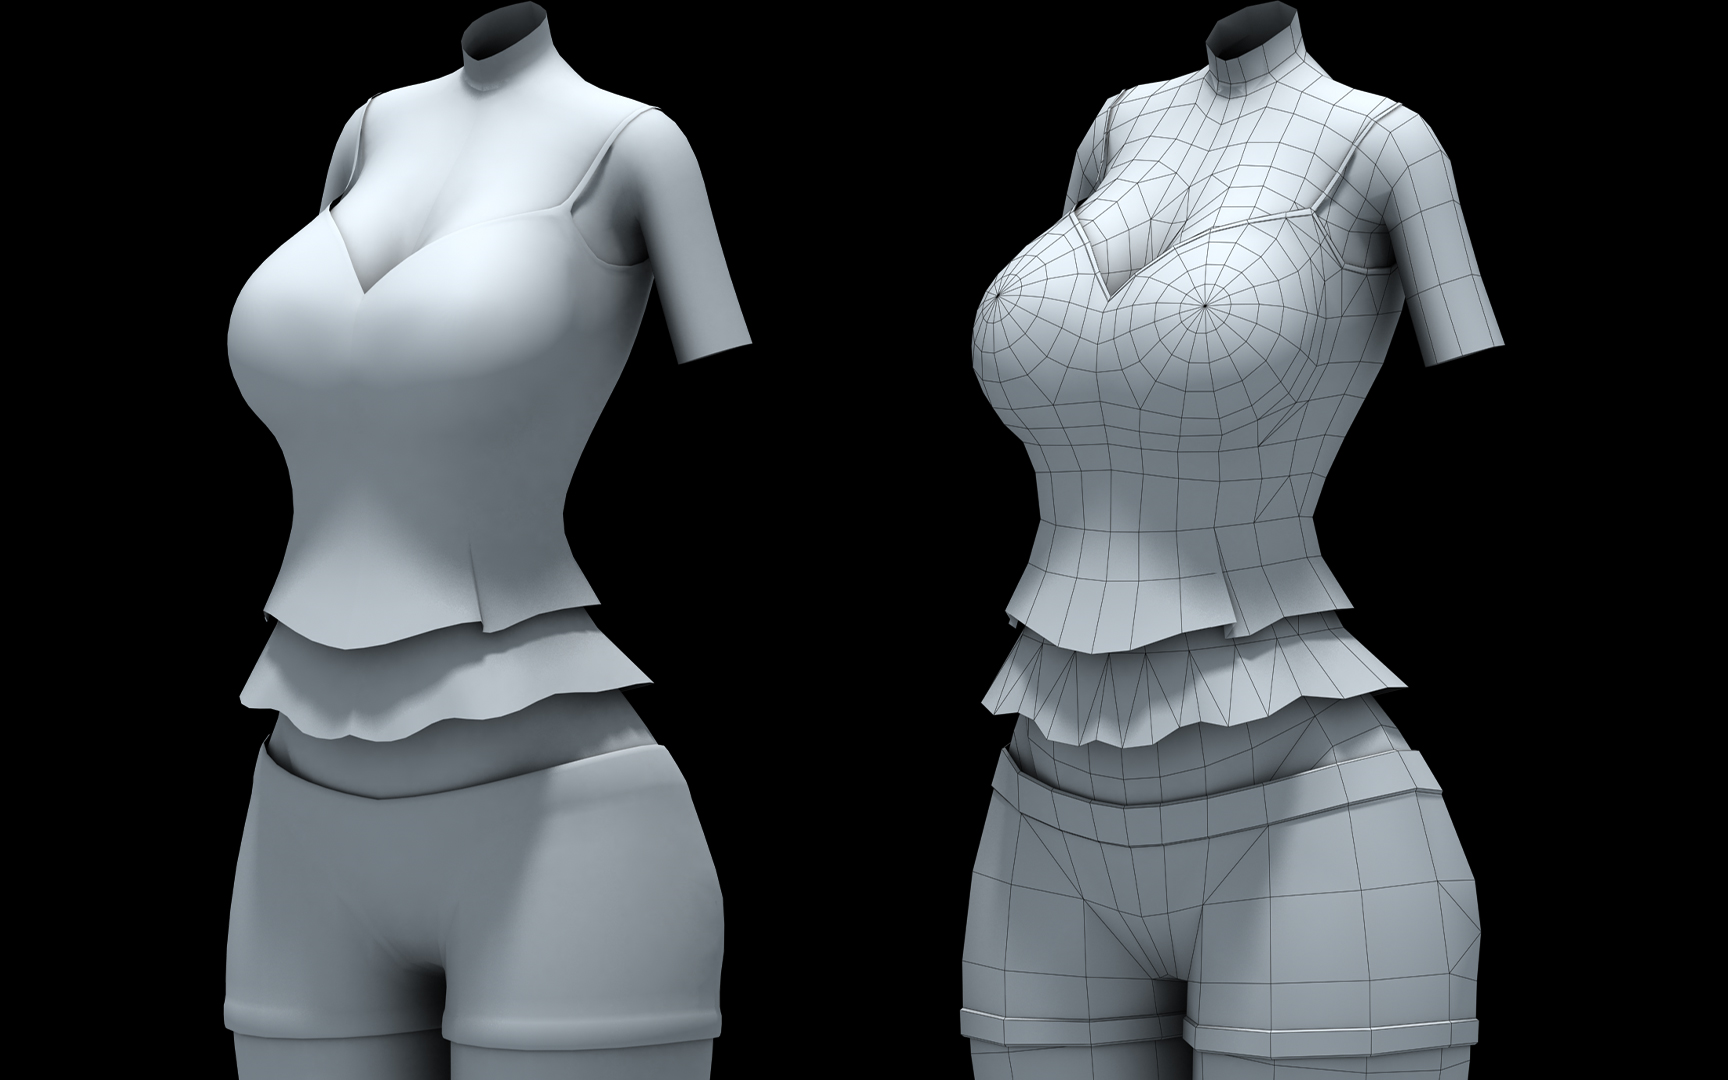 【3d】福利!3dmax大胸女人体模型布线 女性人物角色模型制作教程!